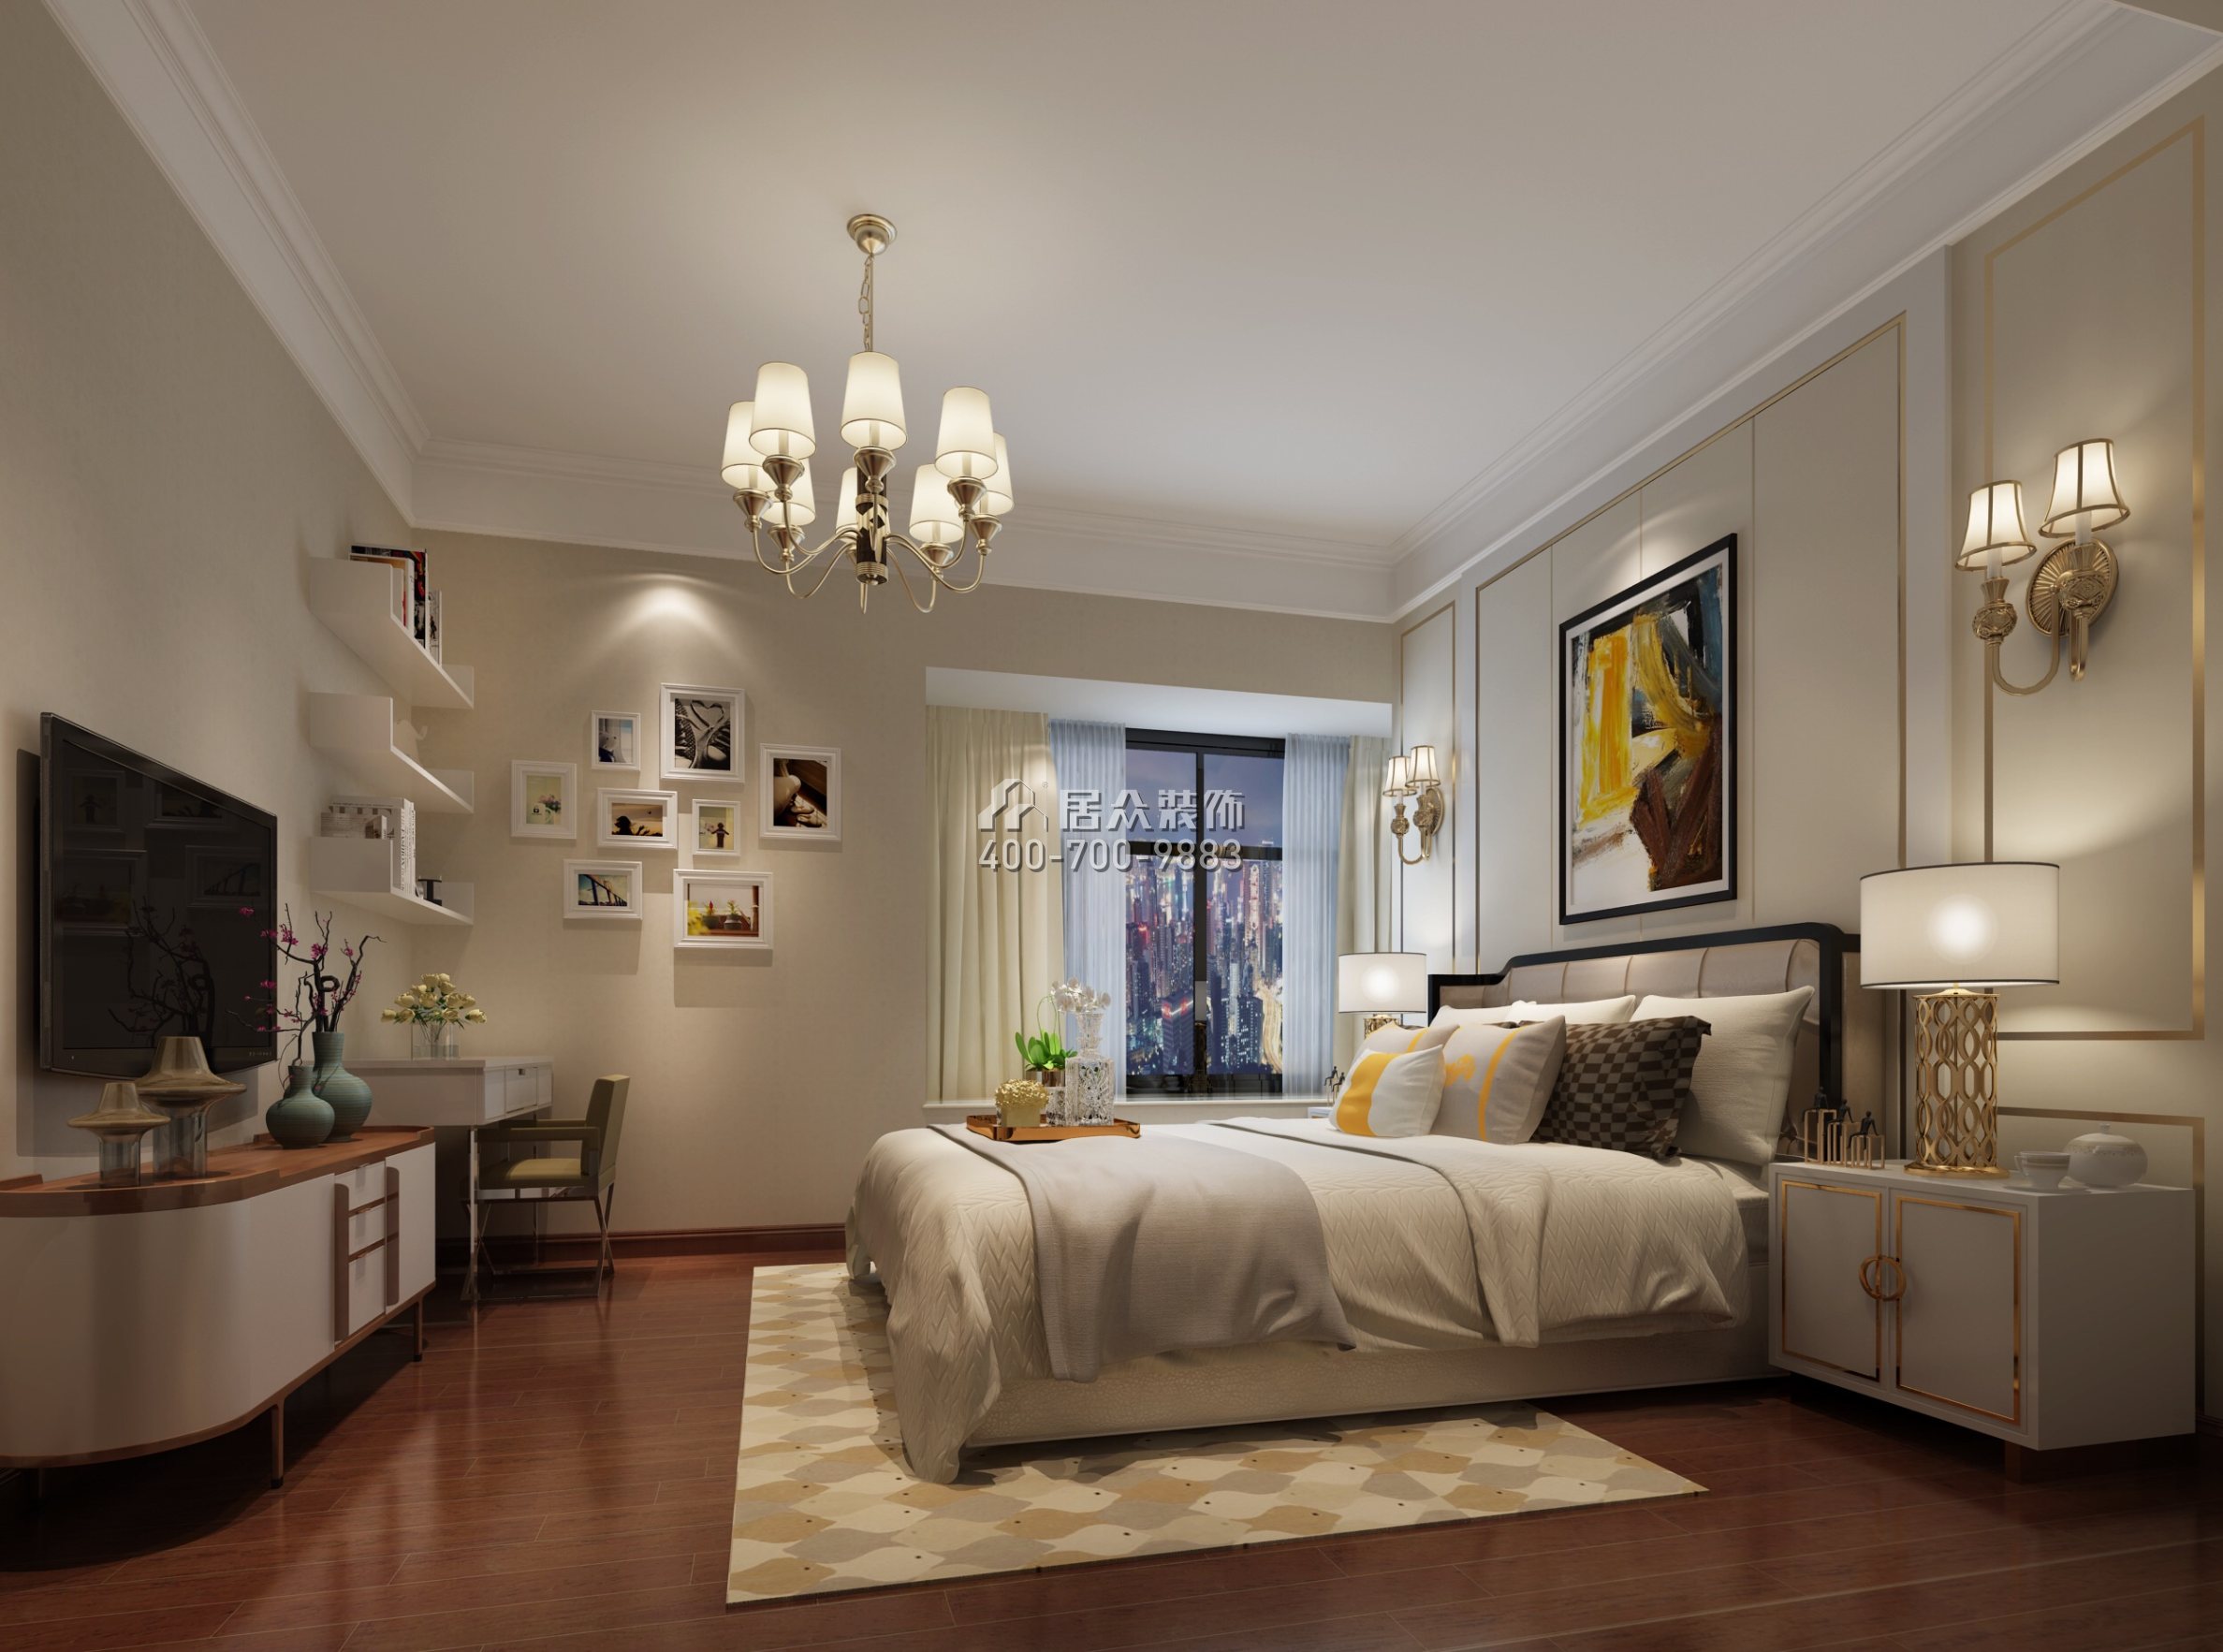 保利东湾东御173平方米现代简约风格平层户型卧室装修效果图